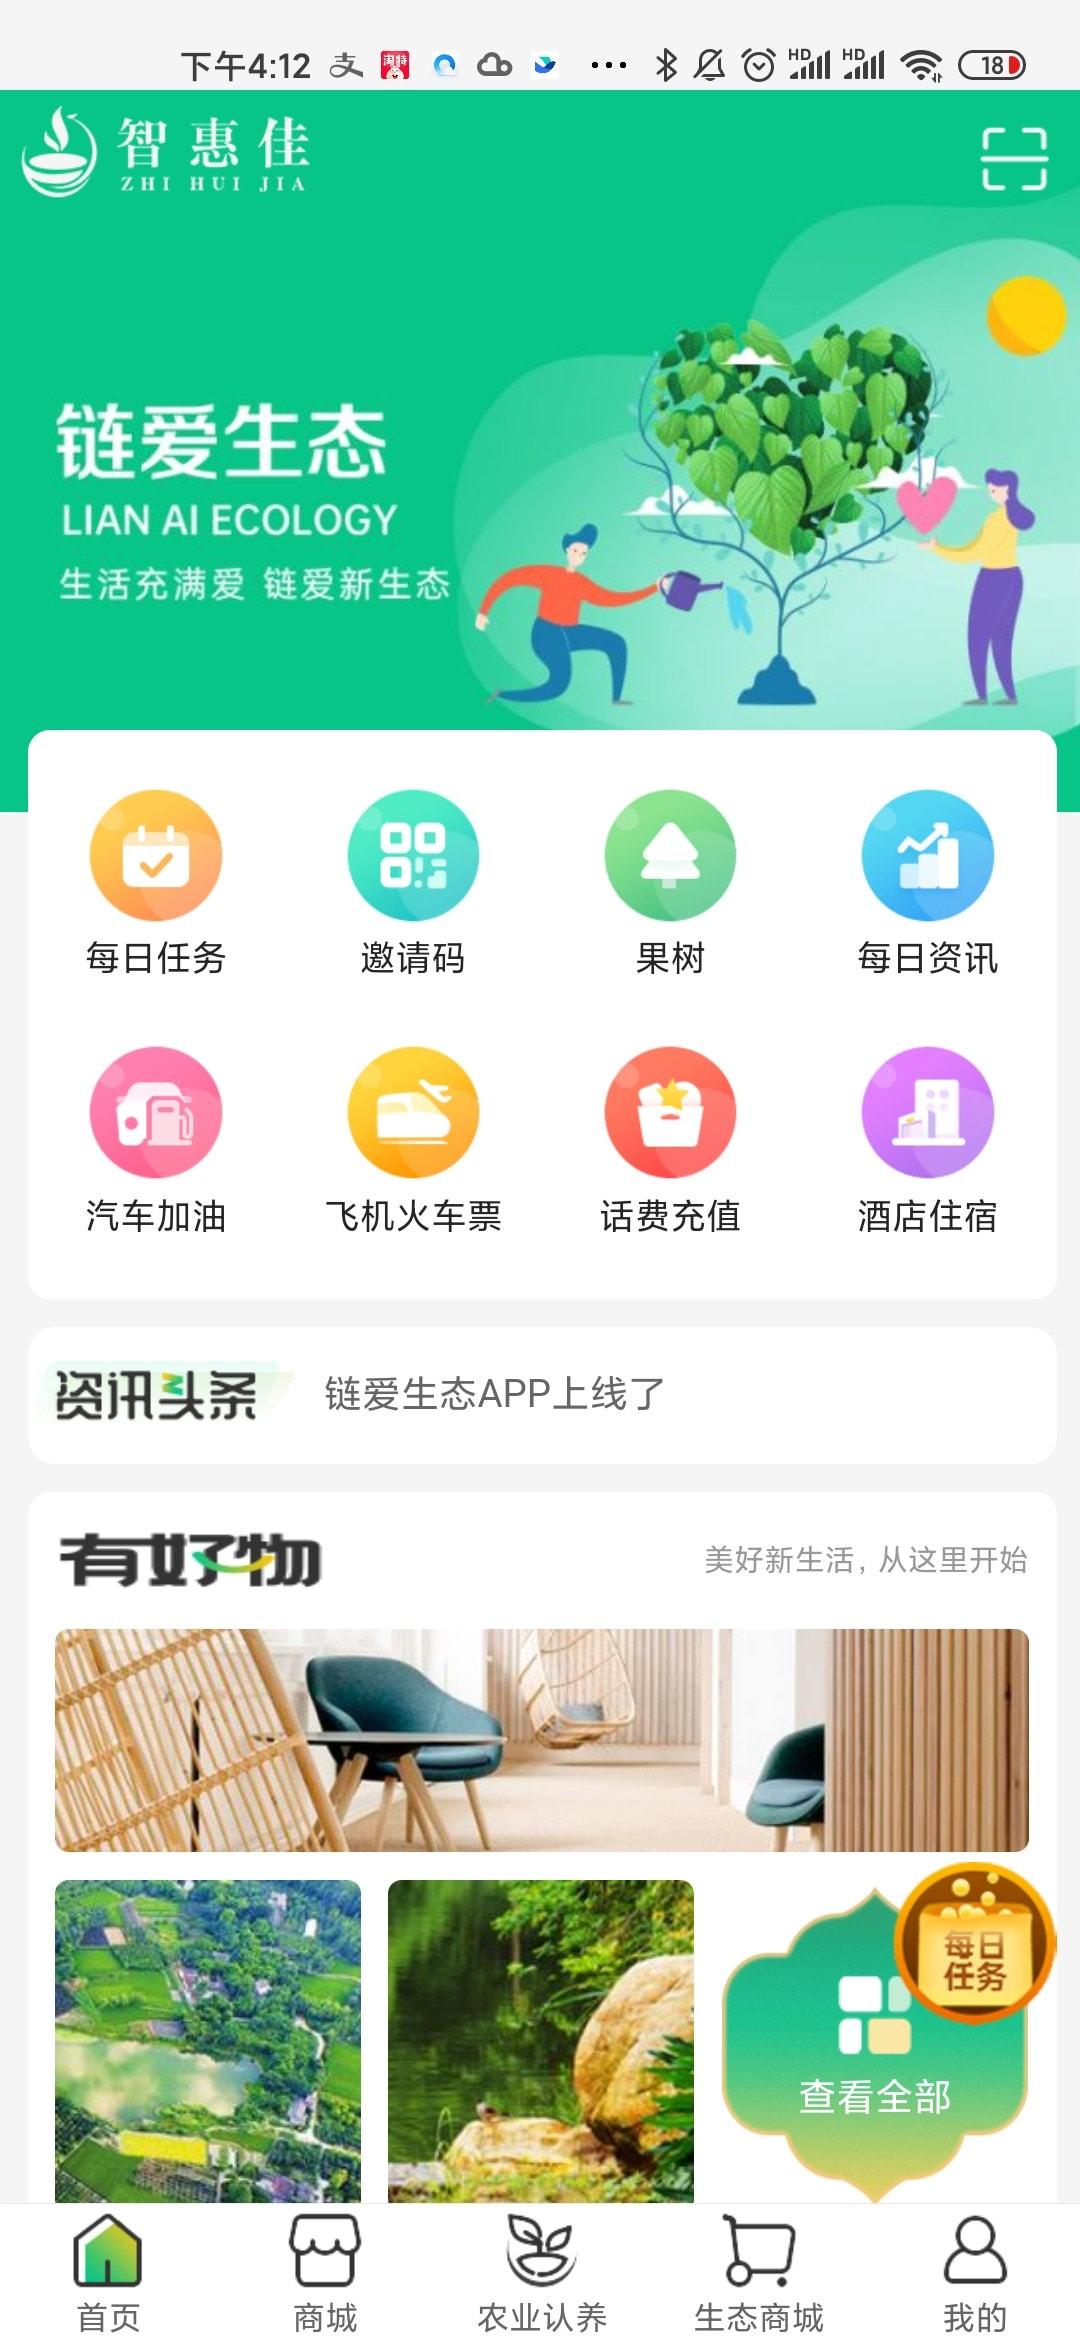 智惠佳商城app下载正版下载中文版2